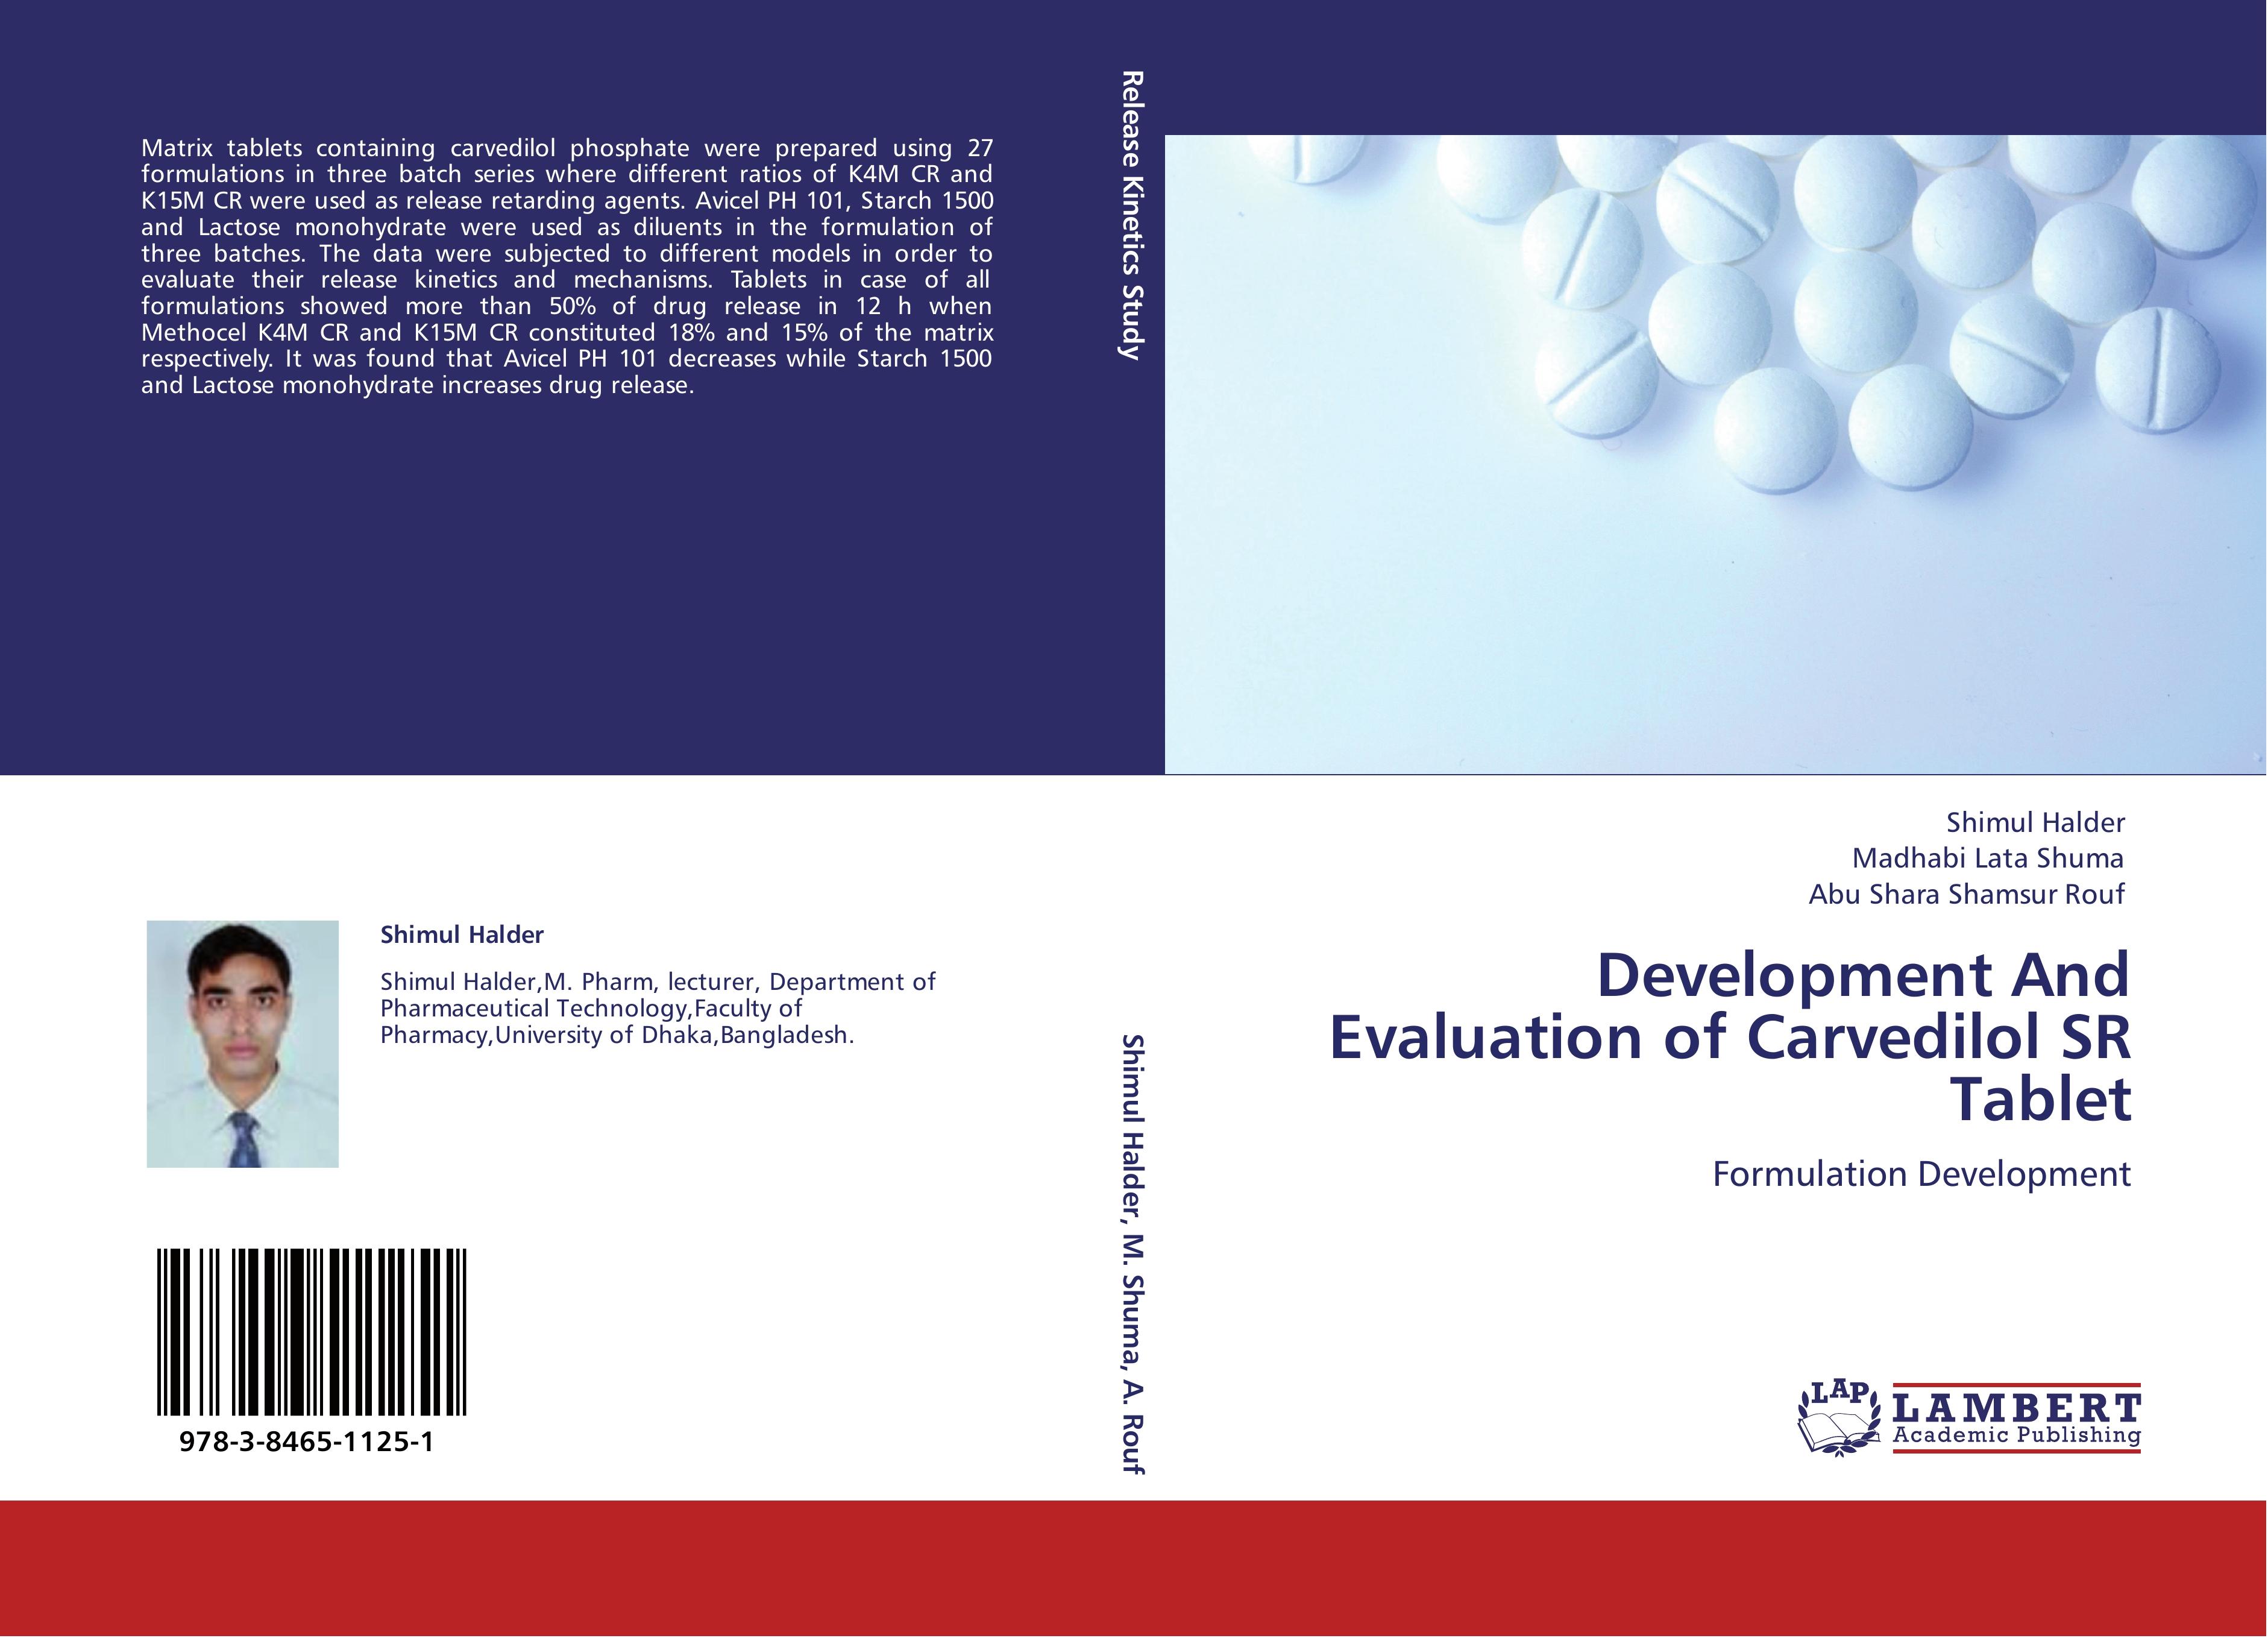 Development And Evaluation of Carvedilol SR Tablet - Shimul Halder Madhabi Lata Shuma Abu Shara Shamsur Rouf